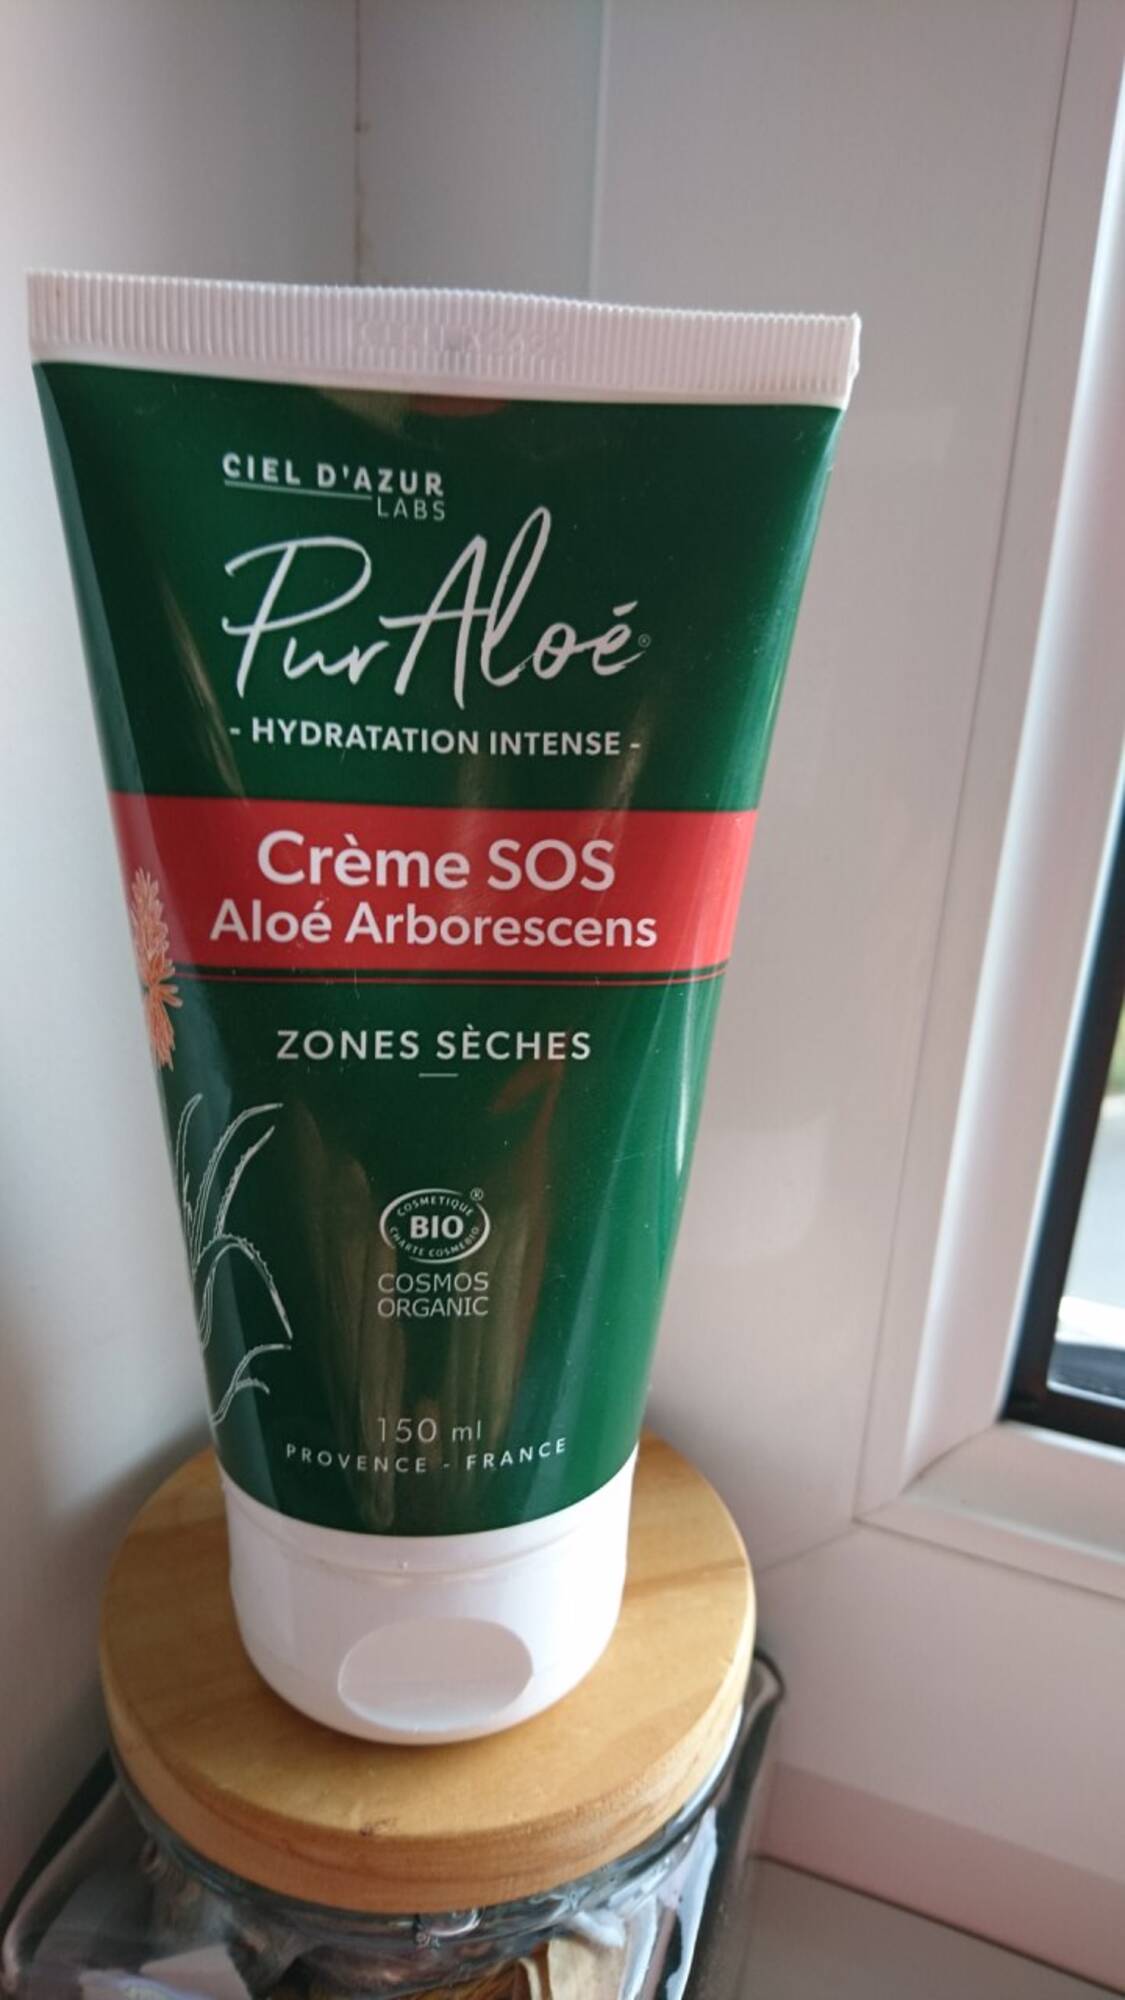 CIEL D'AZUR LABS - Crème SOS aloé arborescens